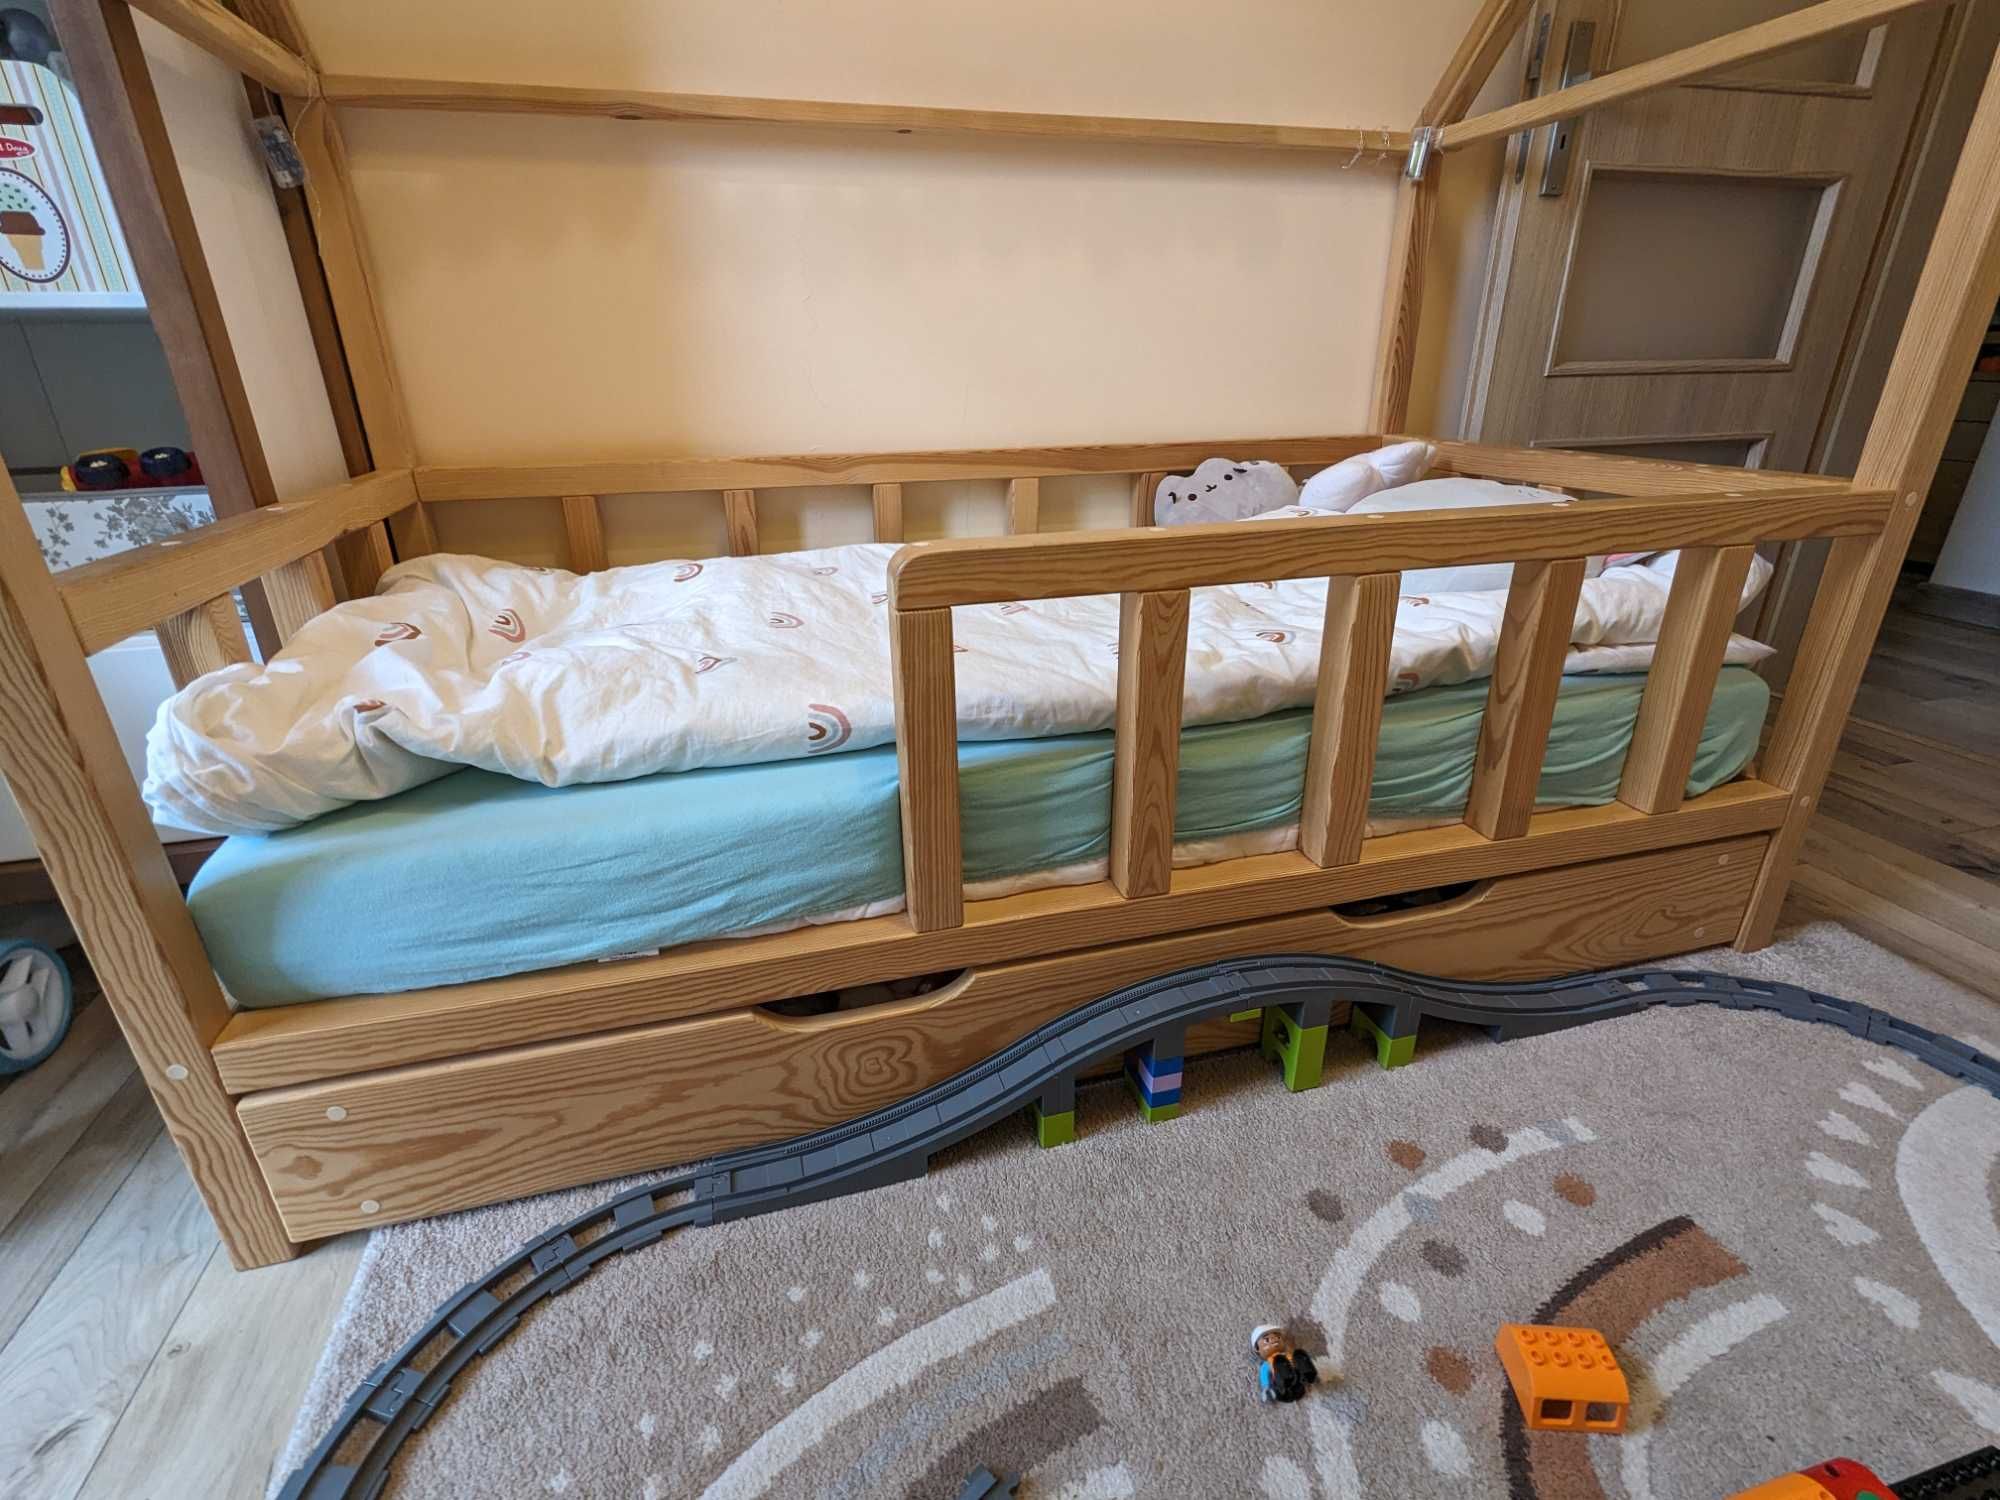 Łóżko łóżeczko dziecięce domek z kominem 160x80 z szufladą i materacem